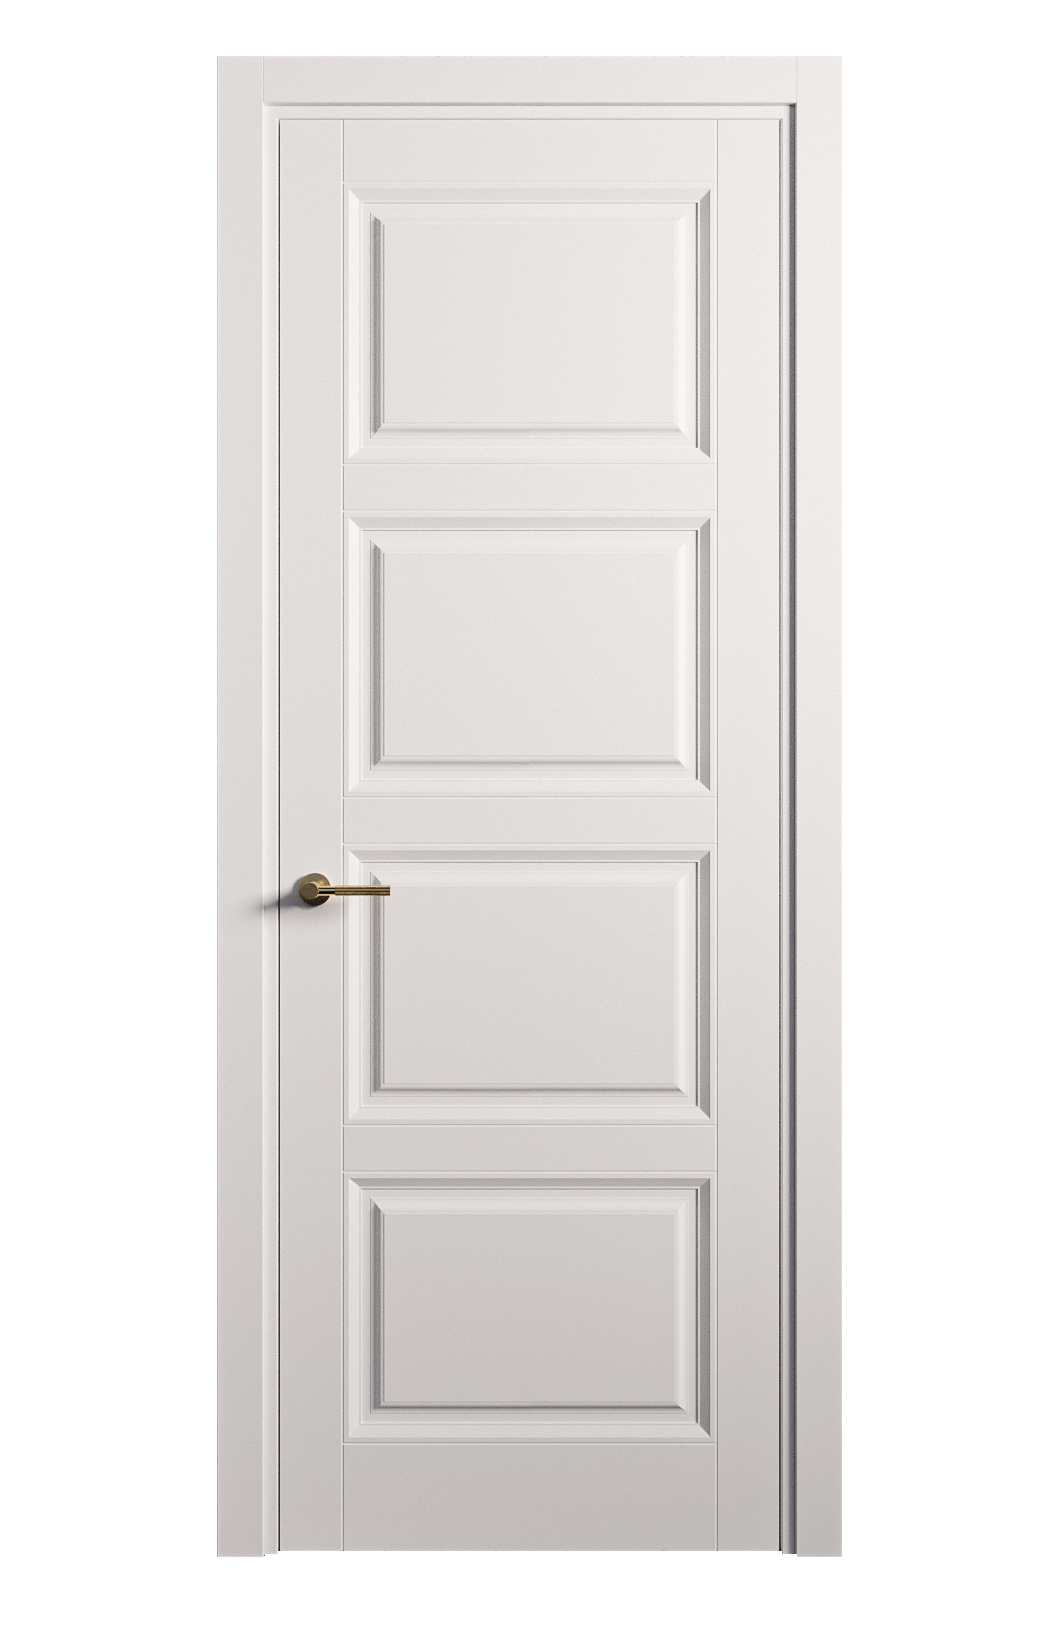 Межкомнатная дверь Venezia-4 глухая эмаль ral 9003 25876